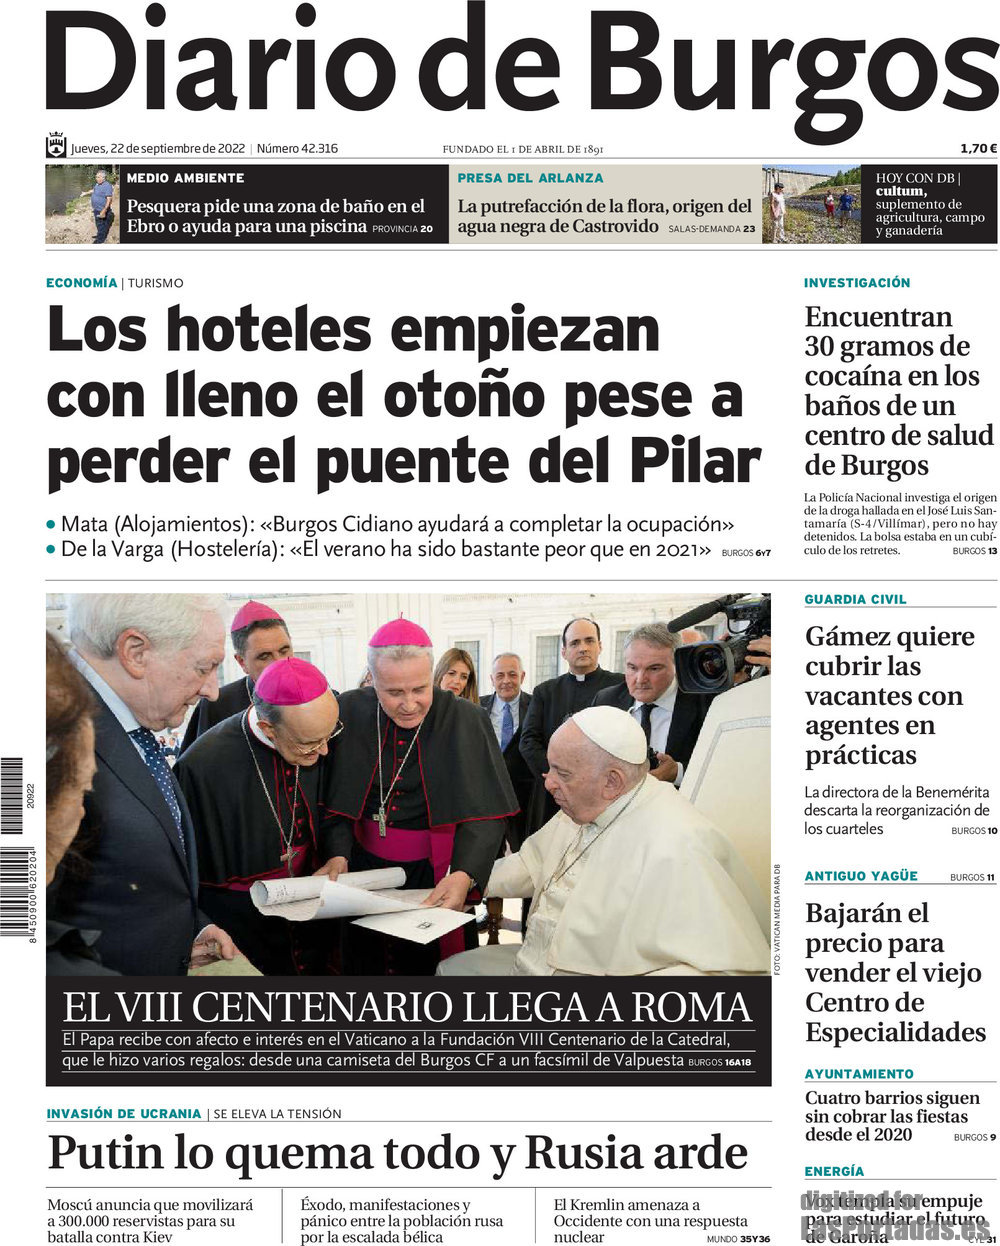 Diario de Burgos